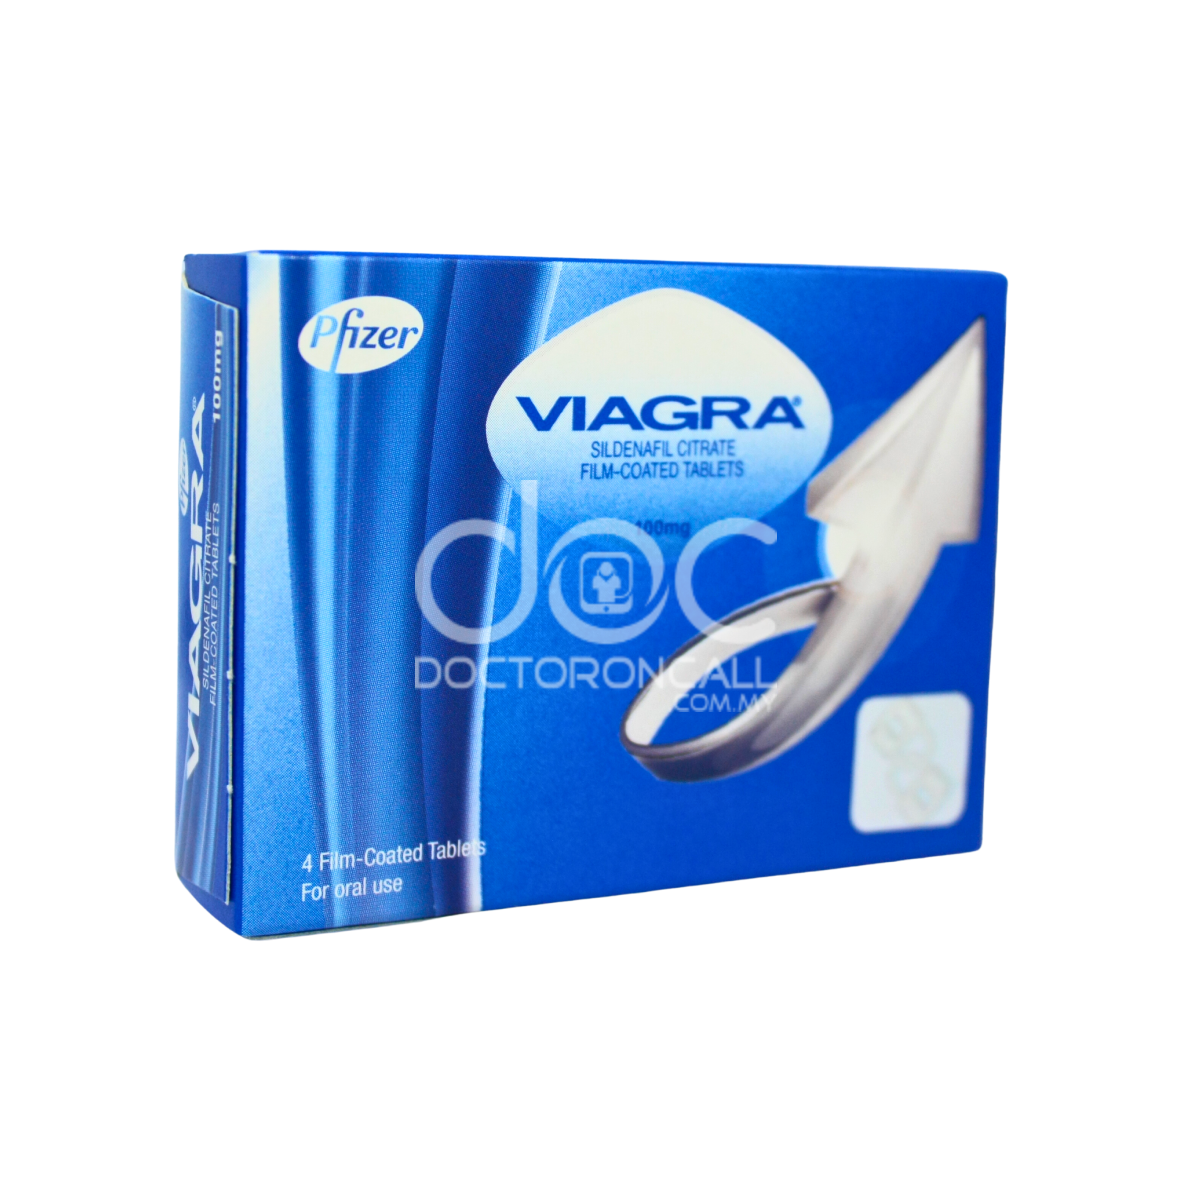 Viagra 100mg Tablet-Masalah kesihatan organ reproduksi